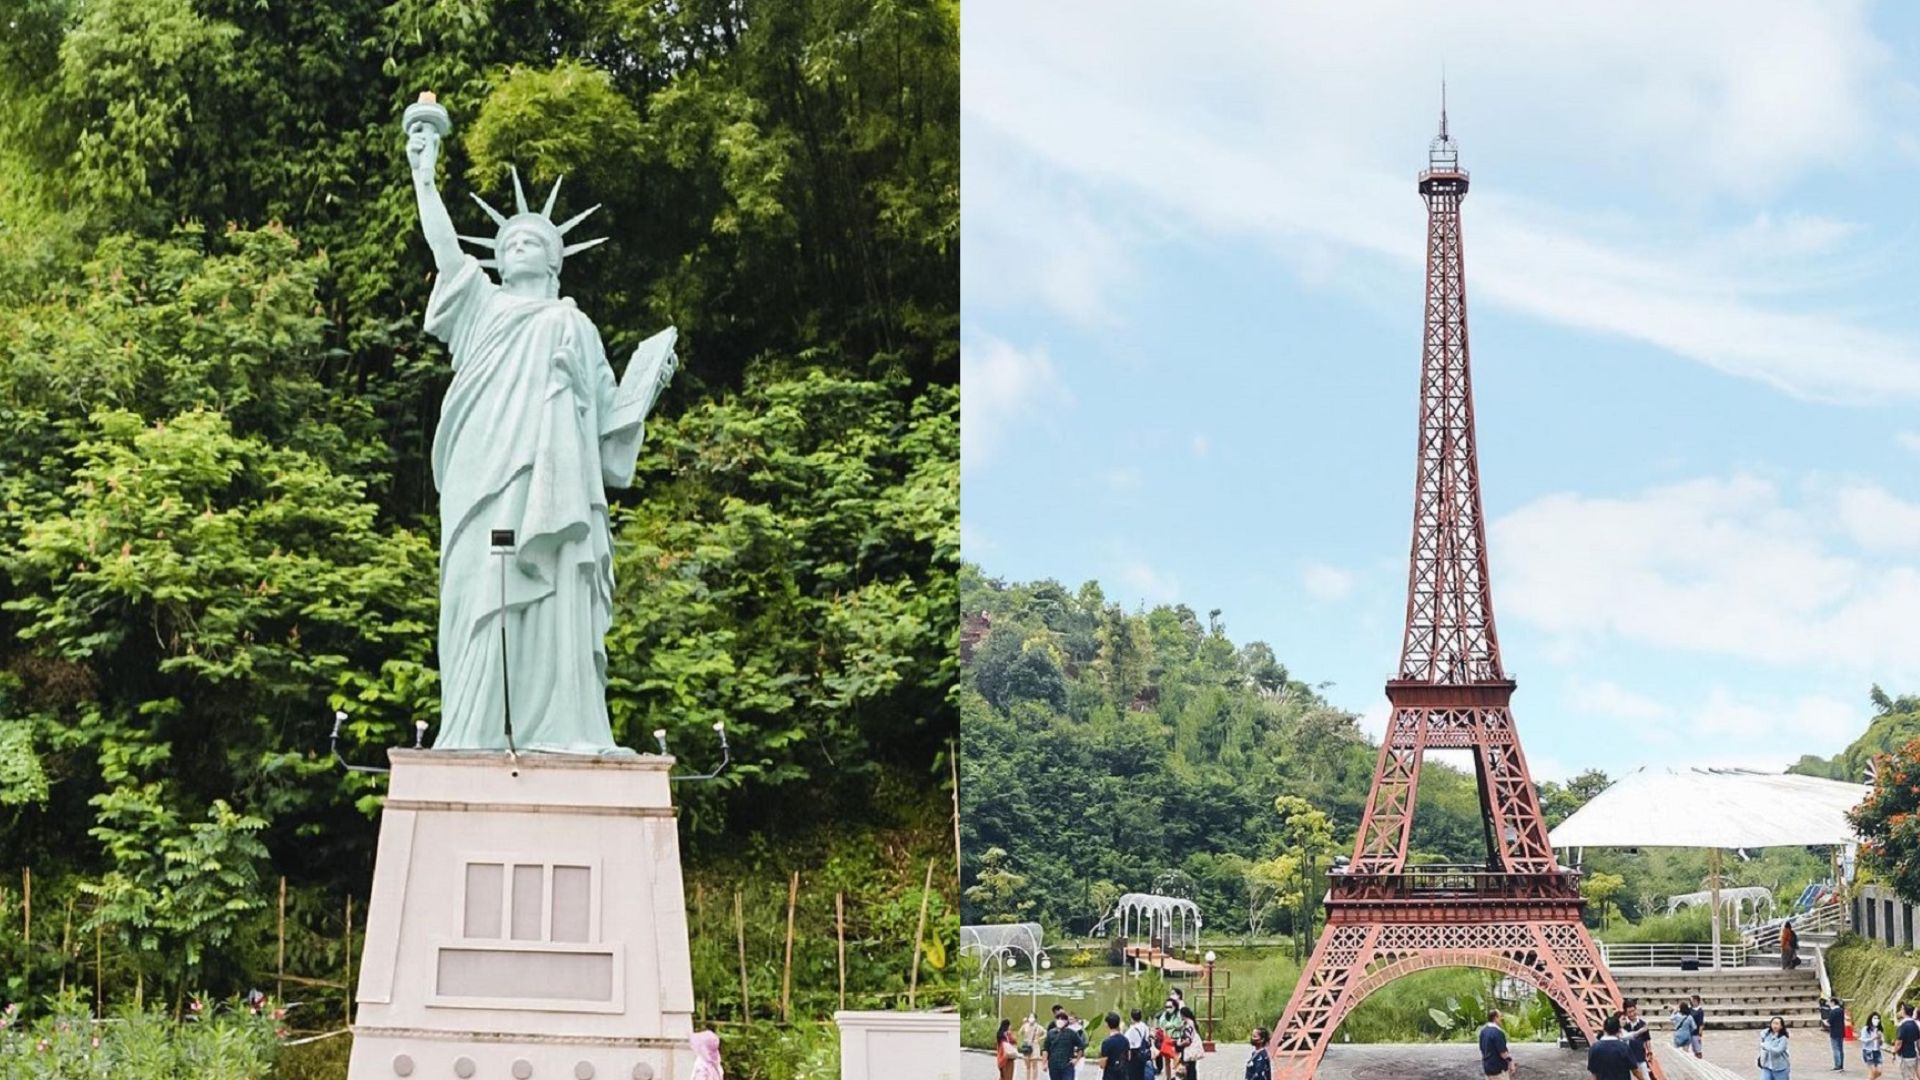 Patung Liberty dan Menara Eiffel di World of Wonders Sarae Hills./ Instagram/ @bdg society